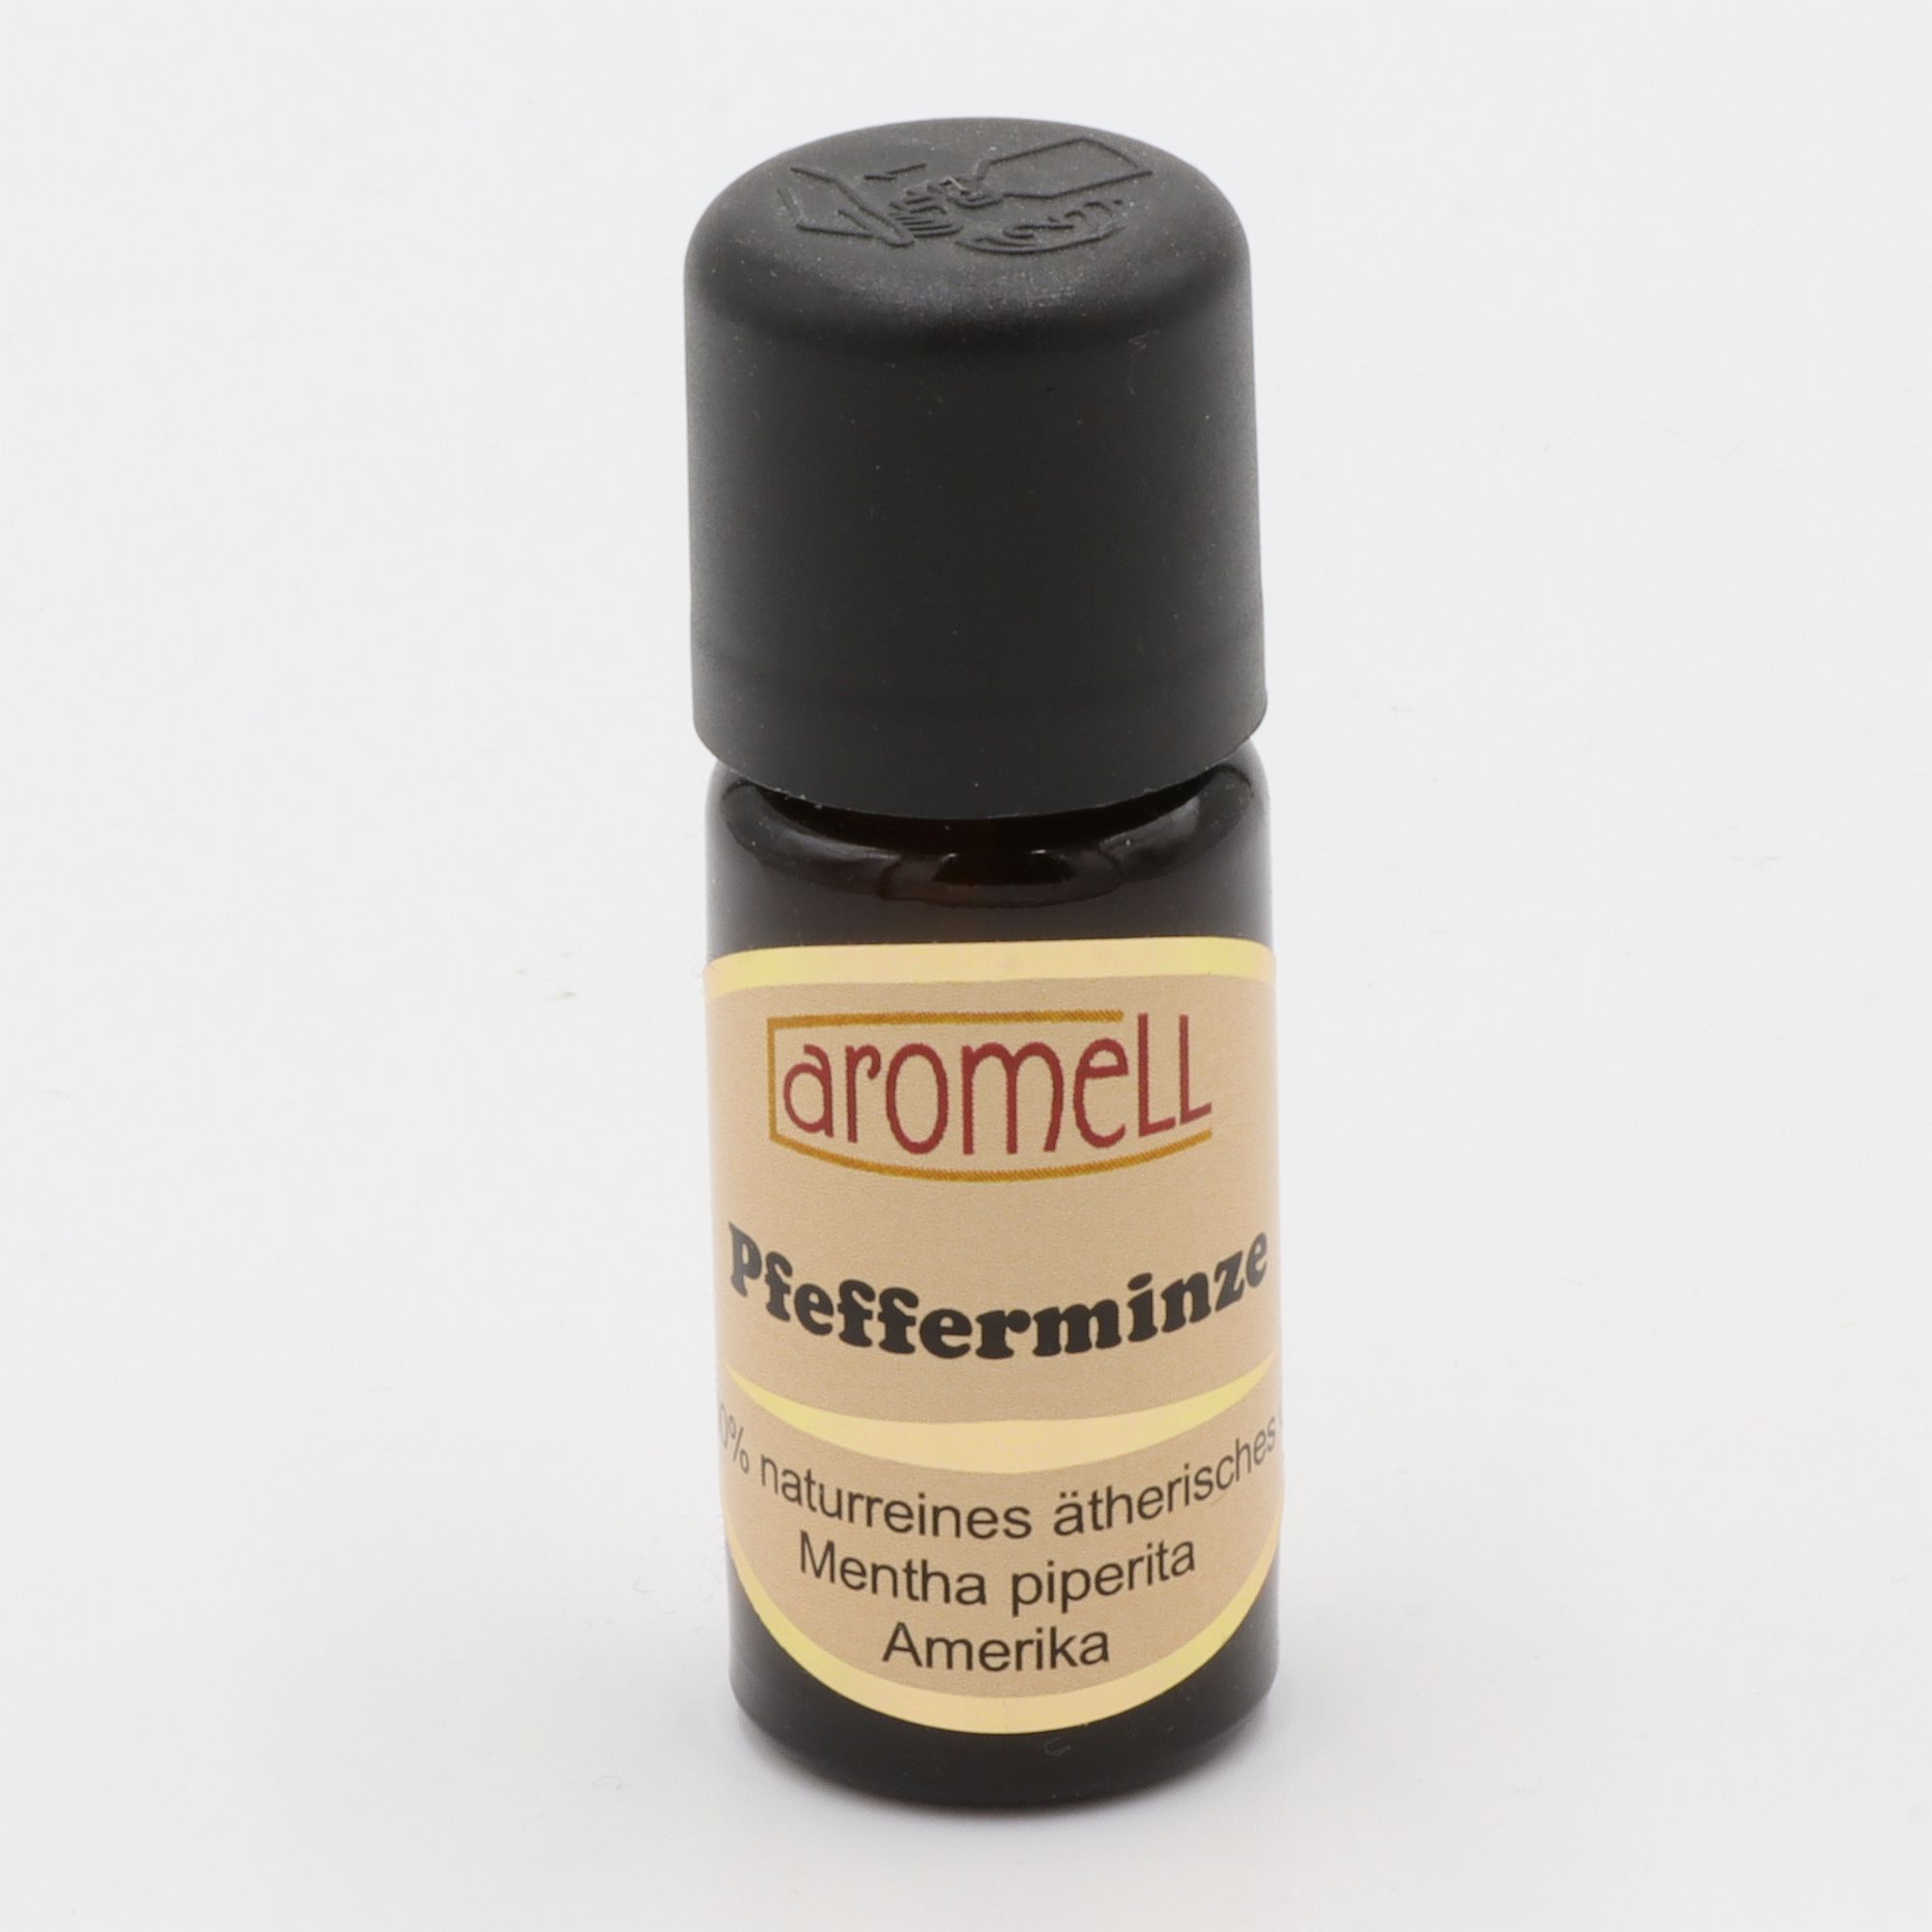 Ätherisches Öl - Aromell - Pfefferminze - 100% naturrein - Mentha Piperita aus Amerika - aromatischer Raumduft für Dein Wohlbefinden - Glas mit Tropfendosierung